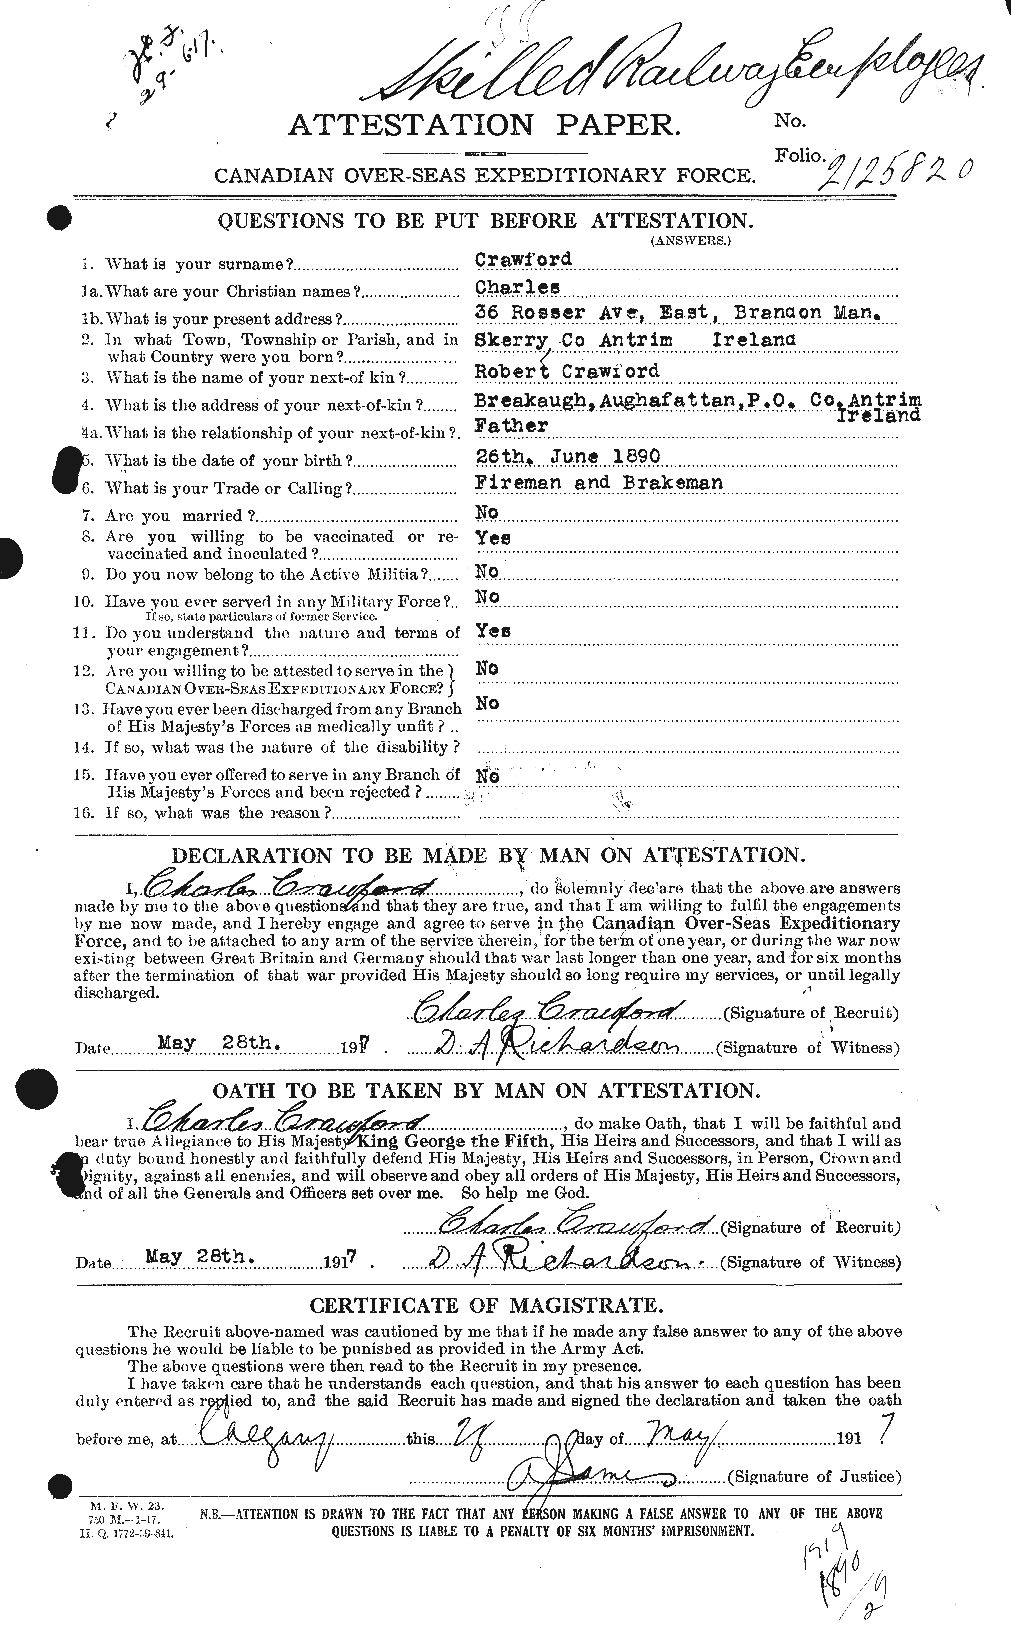 Dossiers du Personnel de la Première Guerre mondiale - CEC 060853a